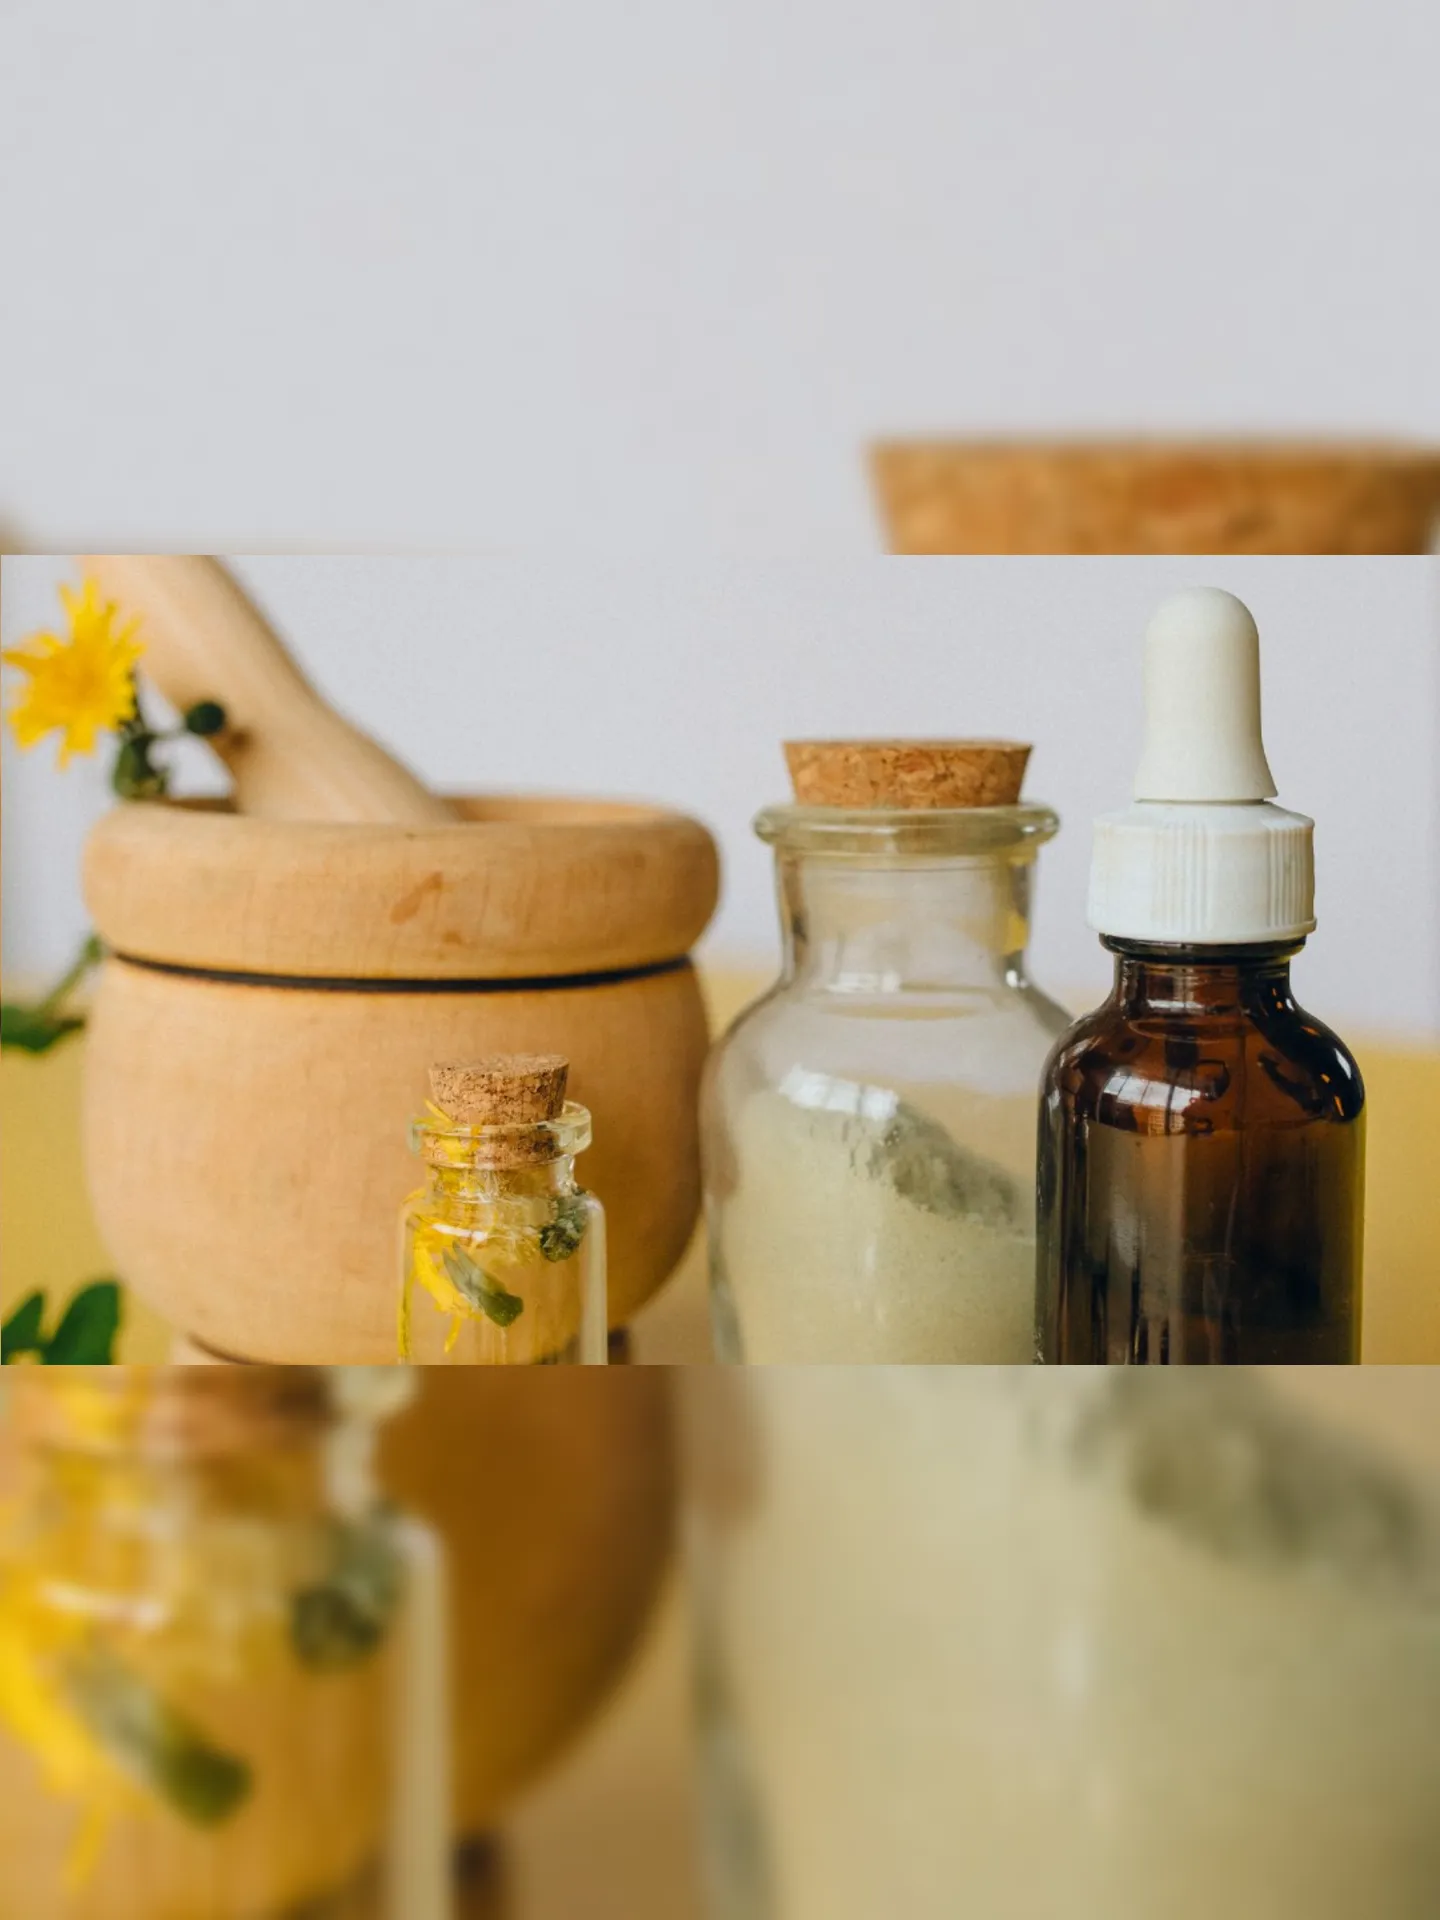 Homeopatia e terapia floral estão entre as praticas adotadas pelo SUS